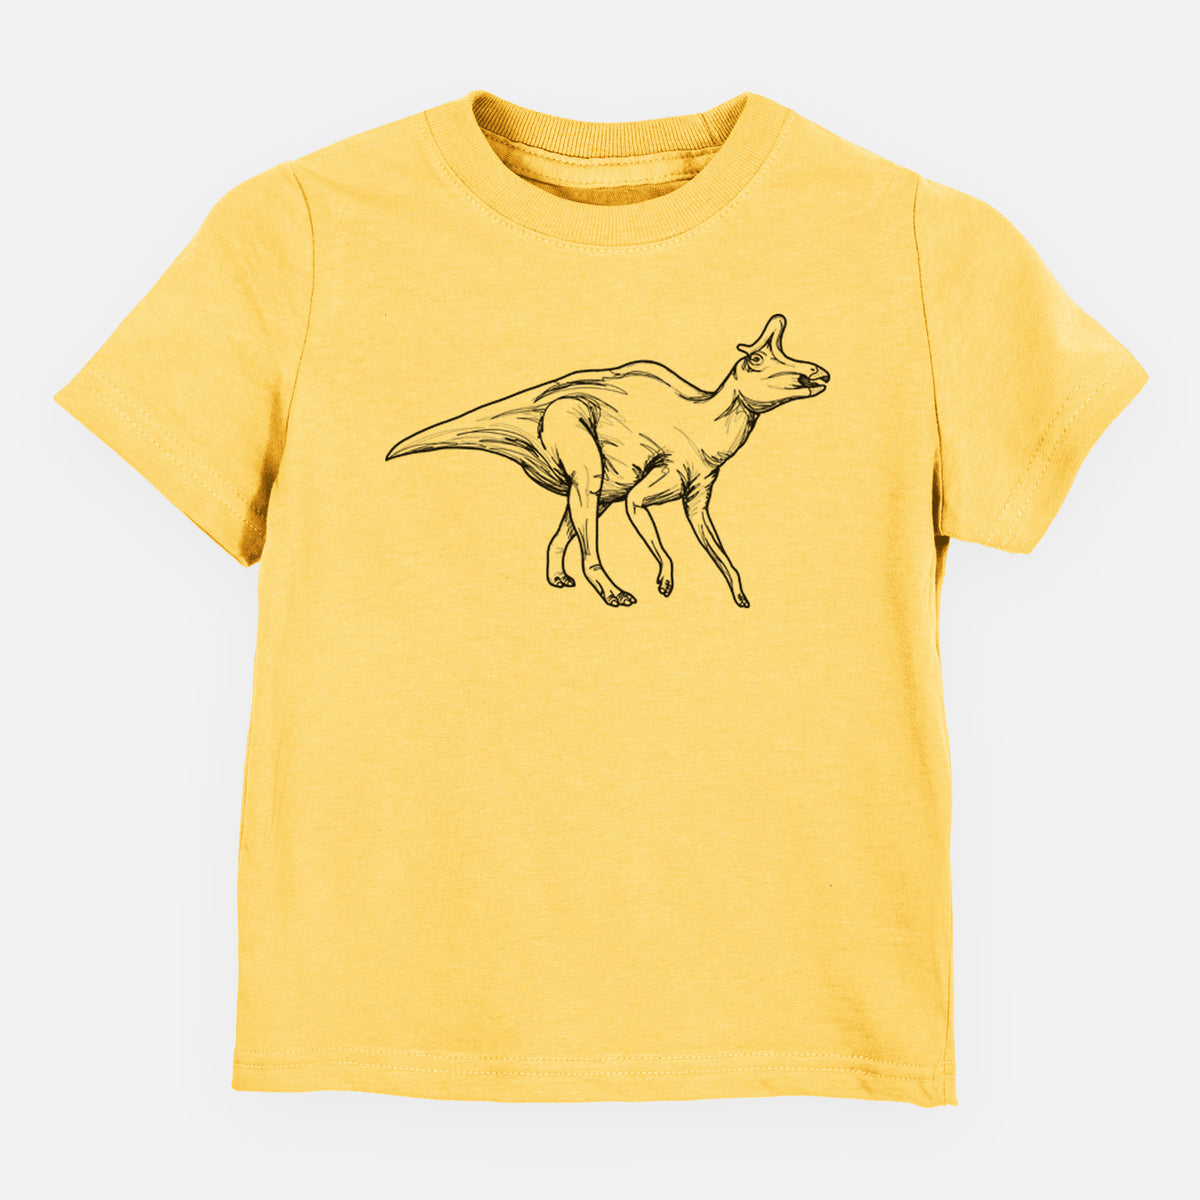 Lambeosaurus Lambei - Kids Shirt